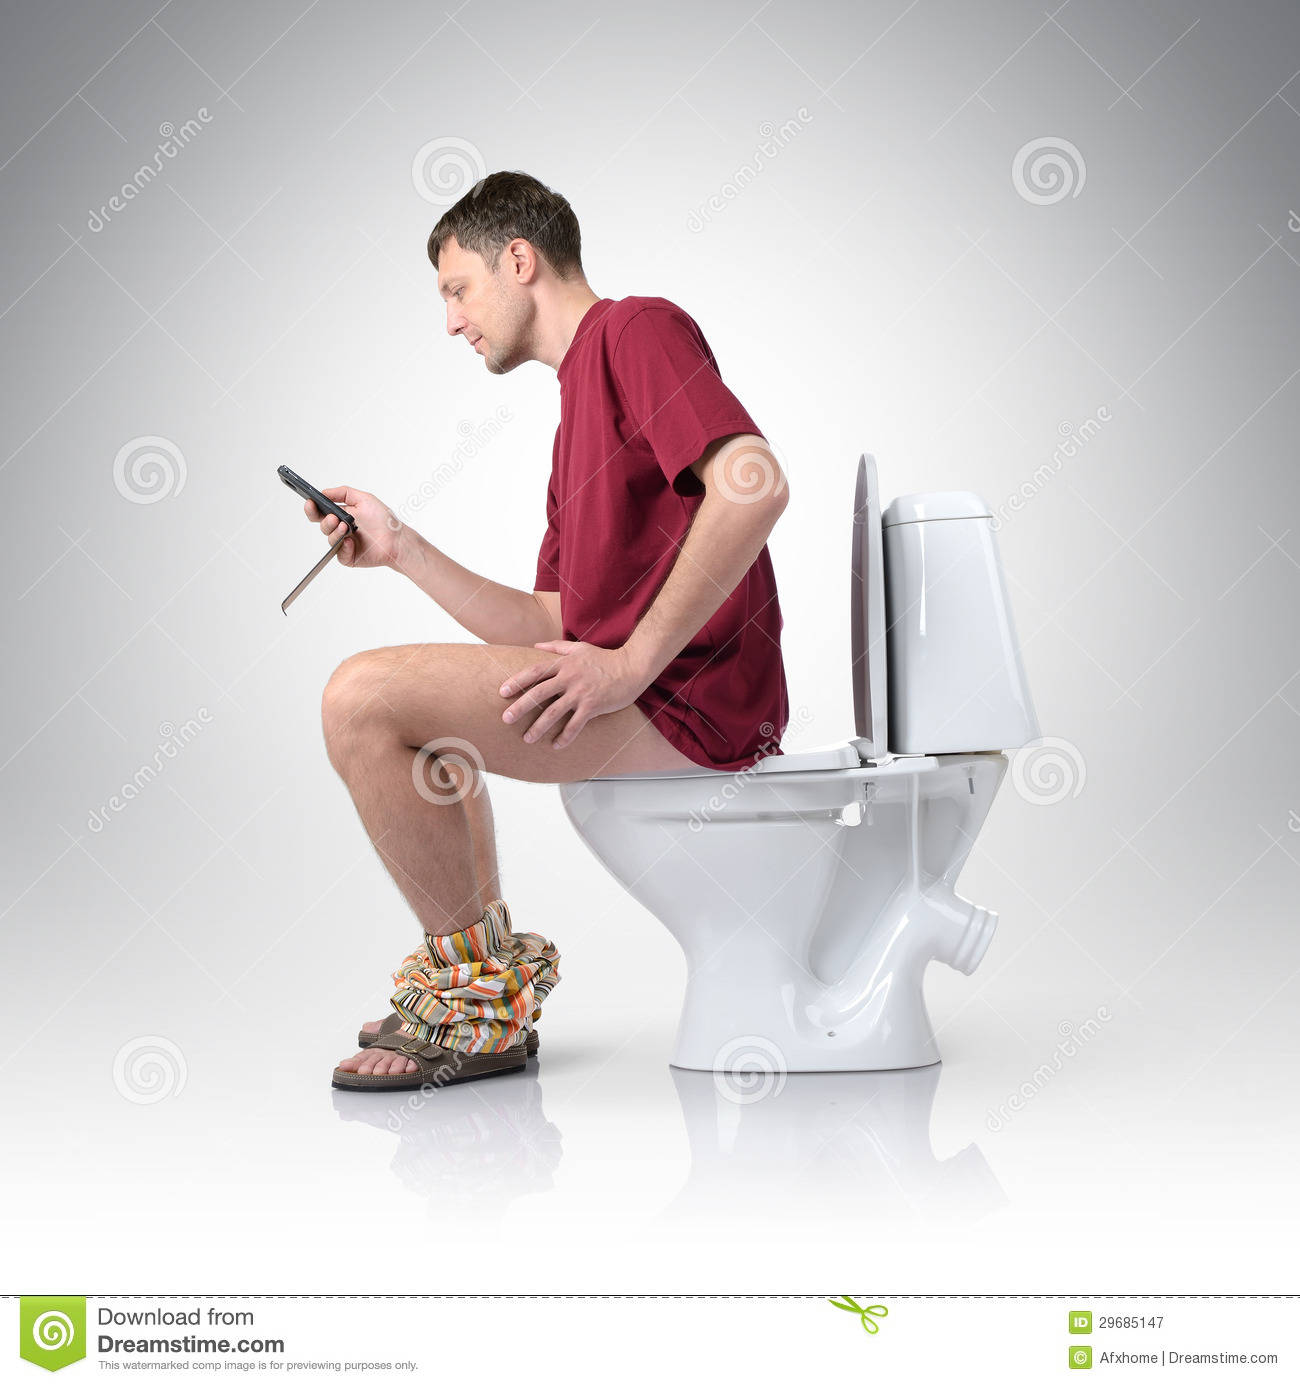 Penyakit yang menyiksa orang yang melihat ponsel saat ke toilet